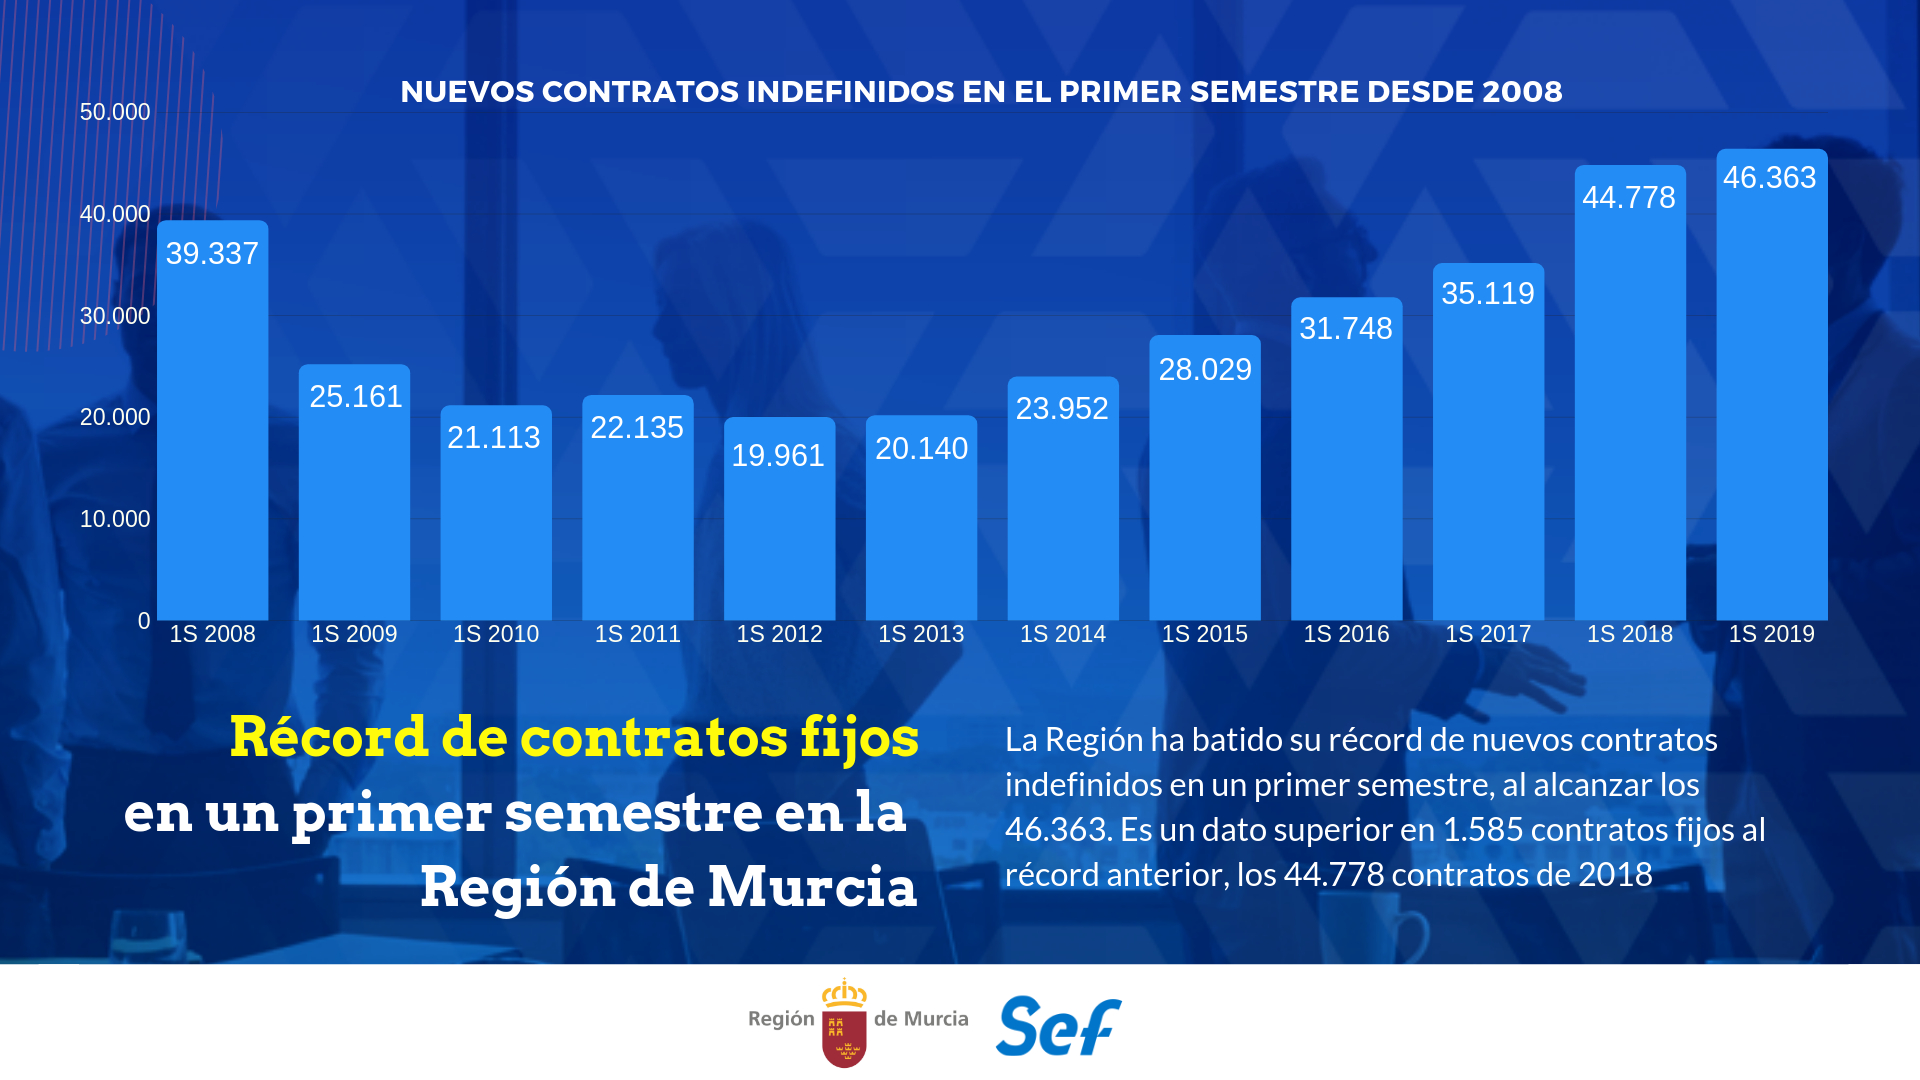 Gráfico de la evolución de los contratos fijos en la Región de Murcia